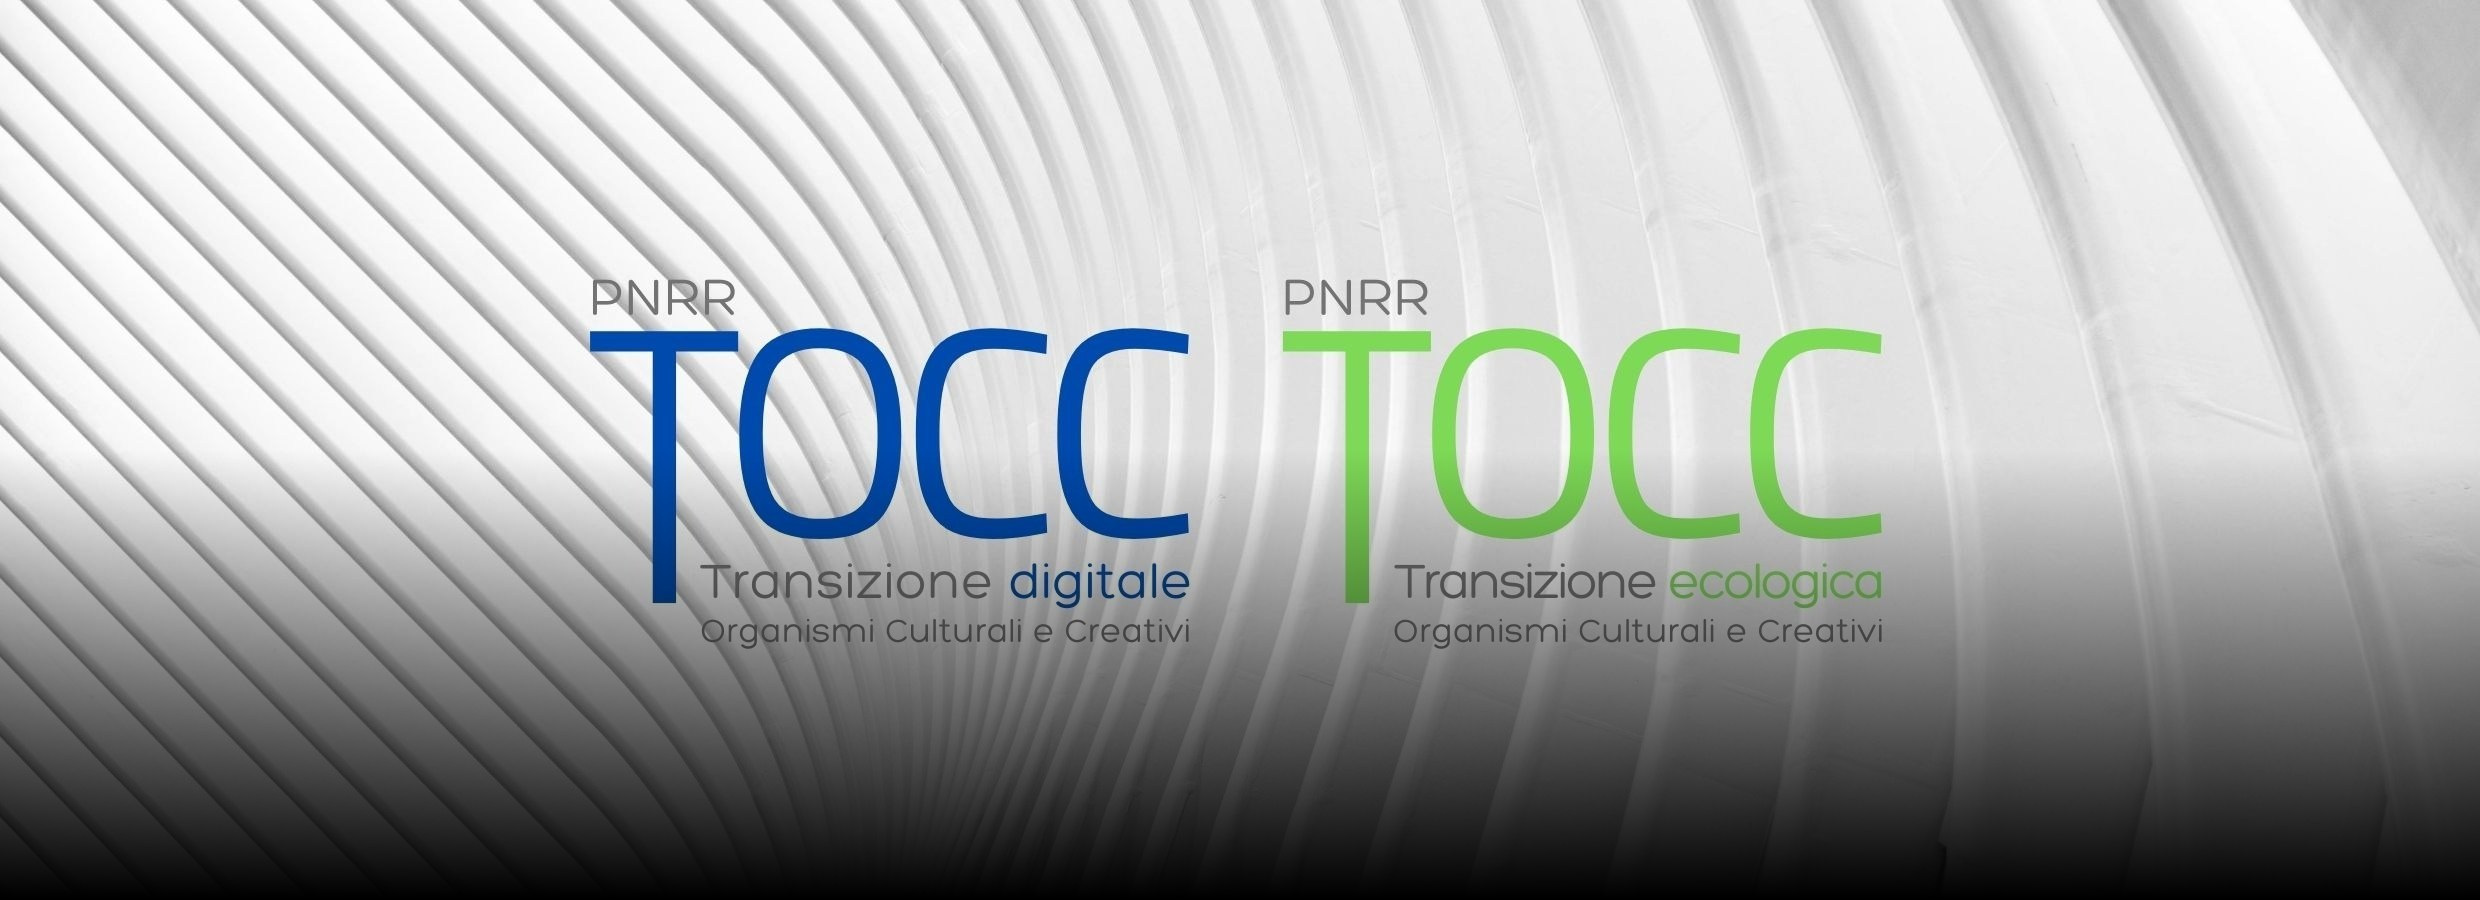 Immagine grafica per gli avvisi pubblici PNRR - TOCC